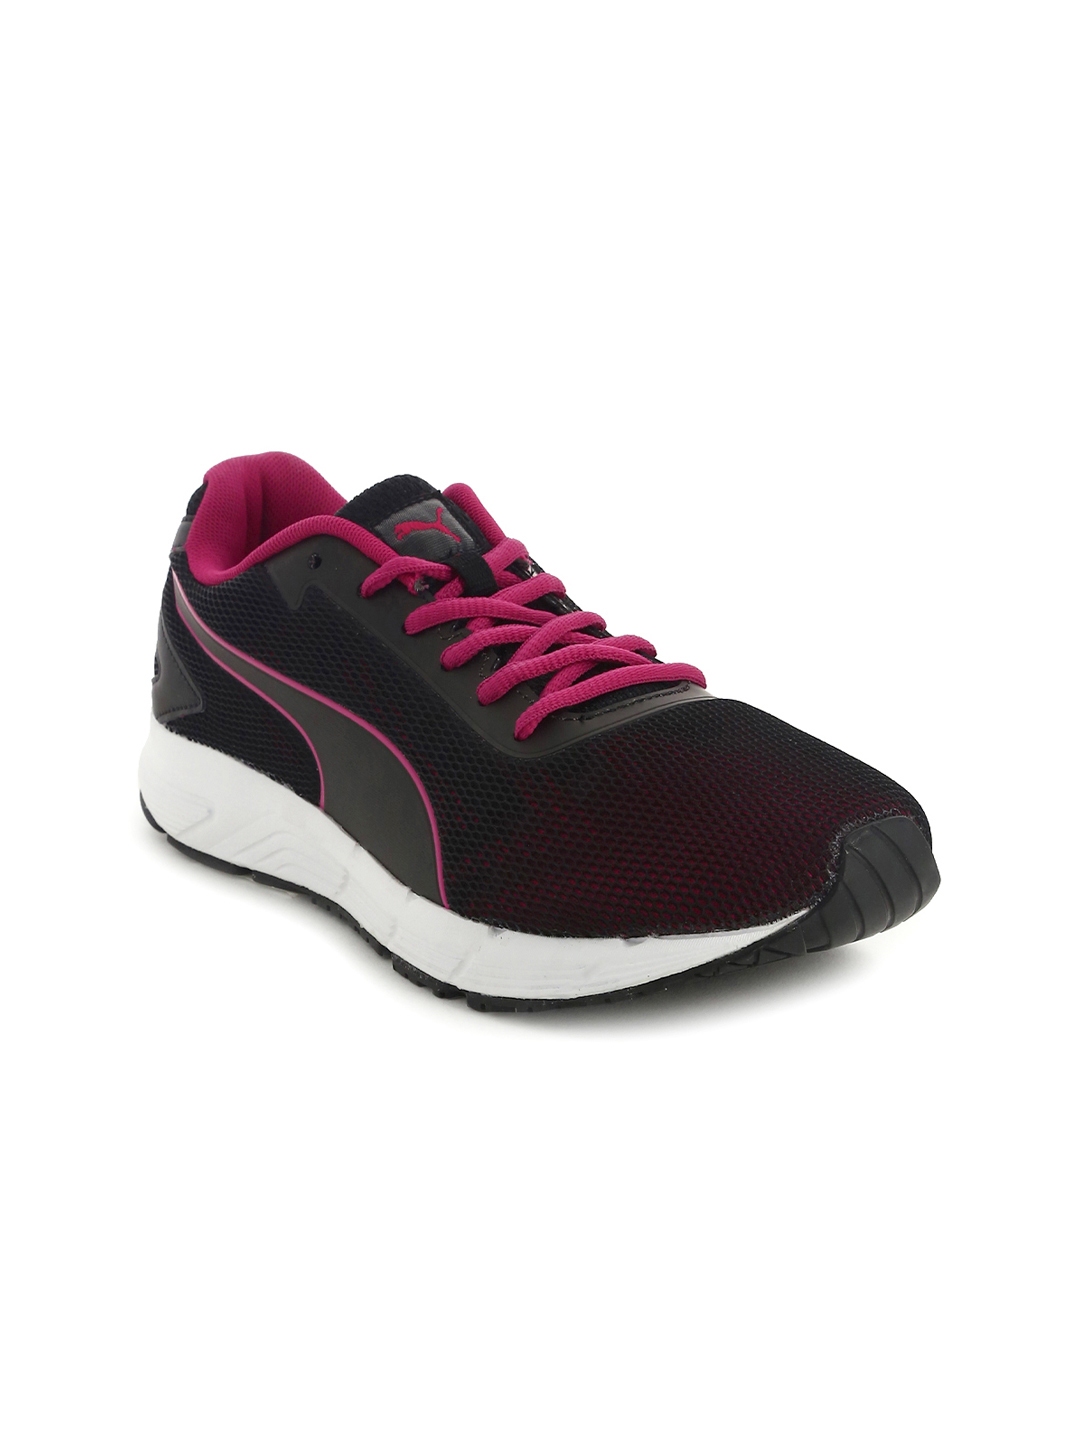 Buy Puma Women Black Running Shoes - Sports Shoes for Women 2254221 ...